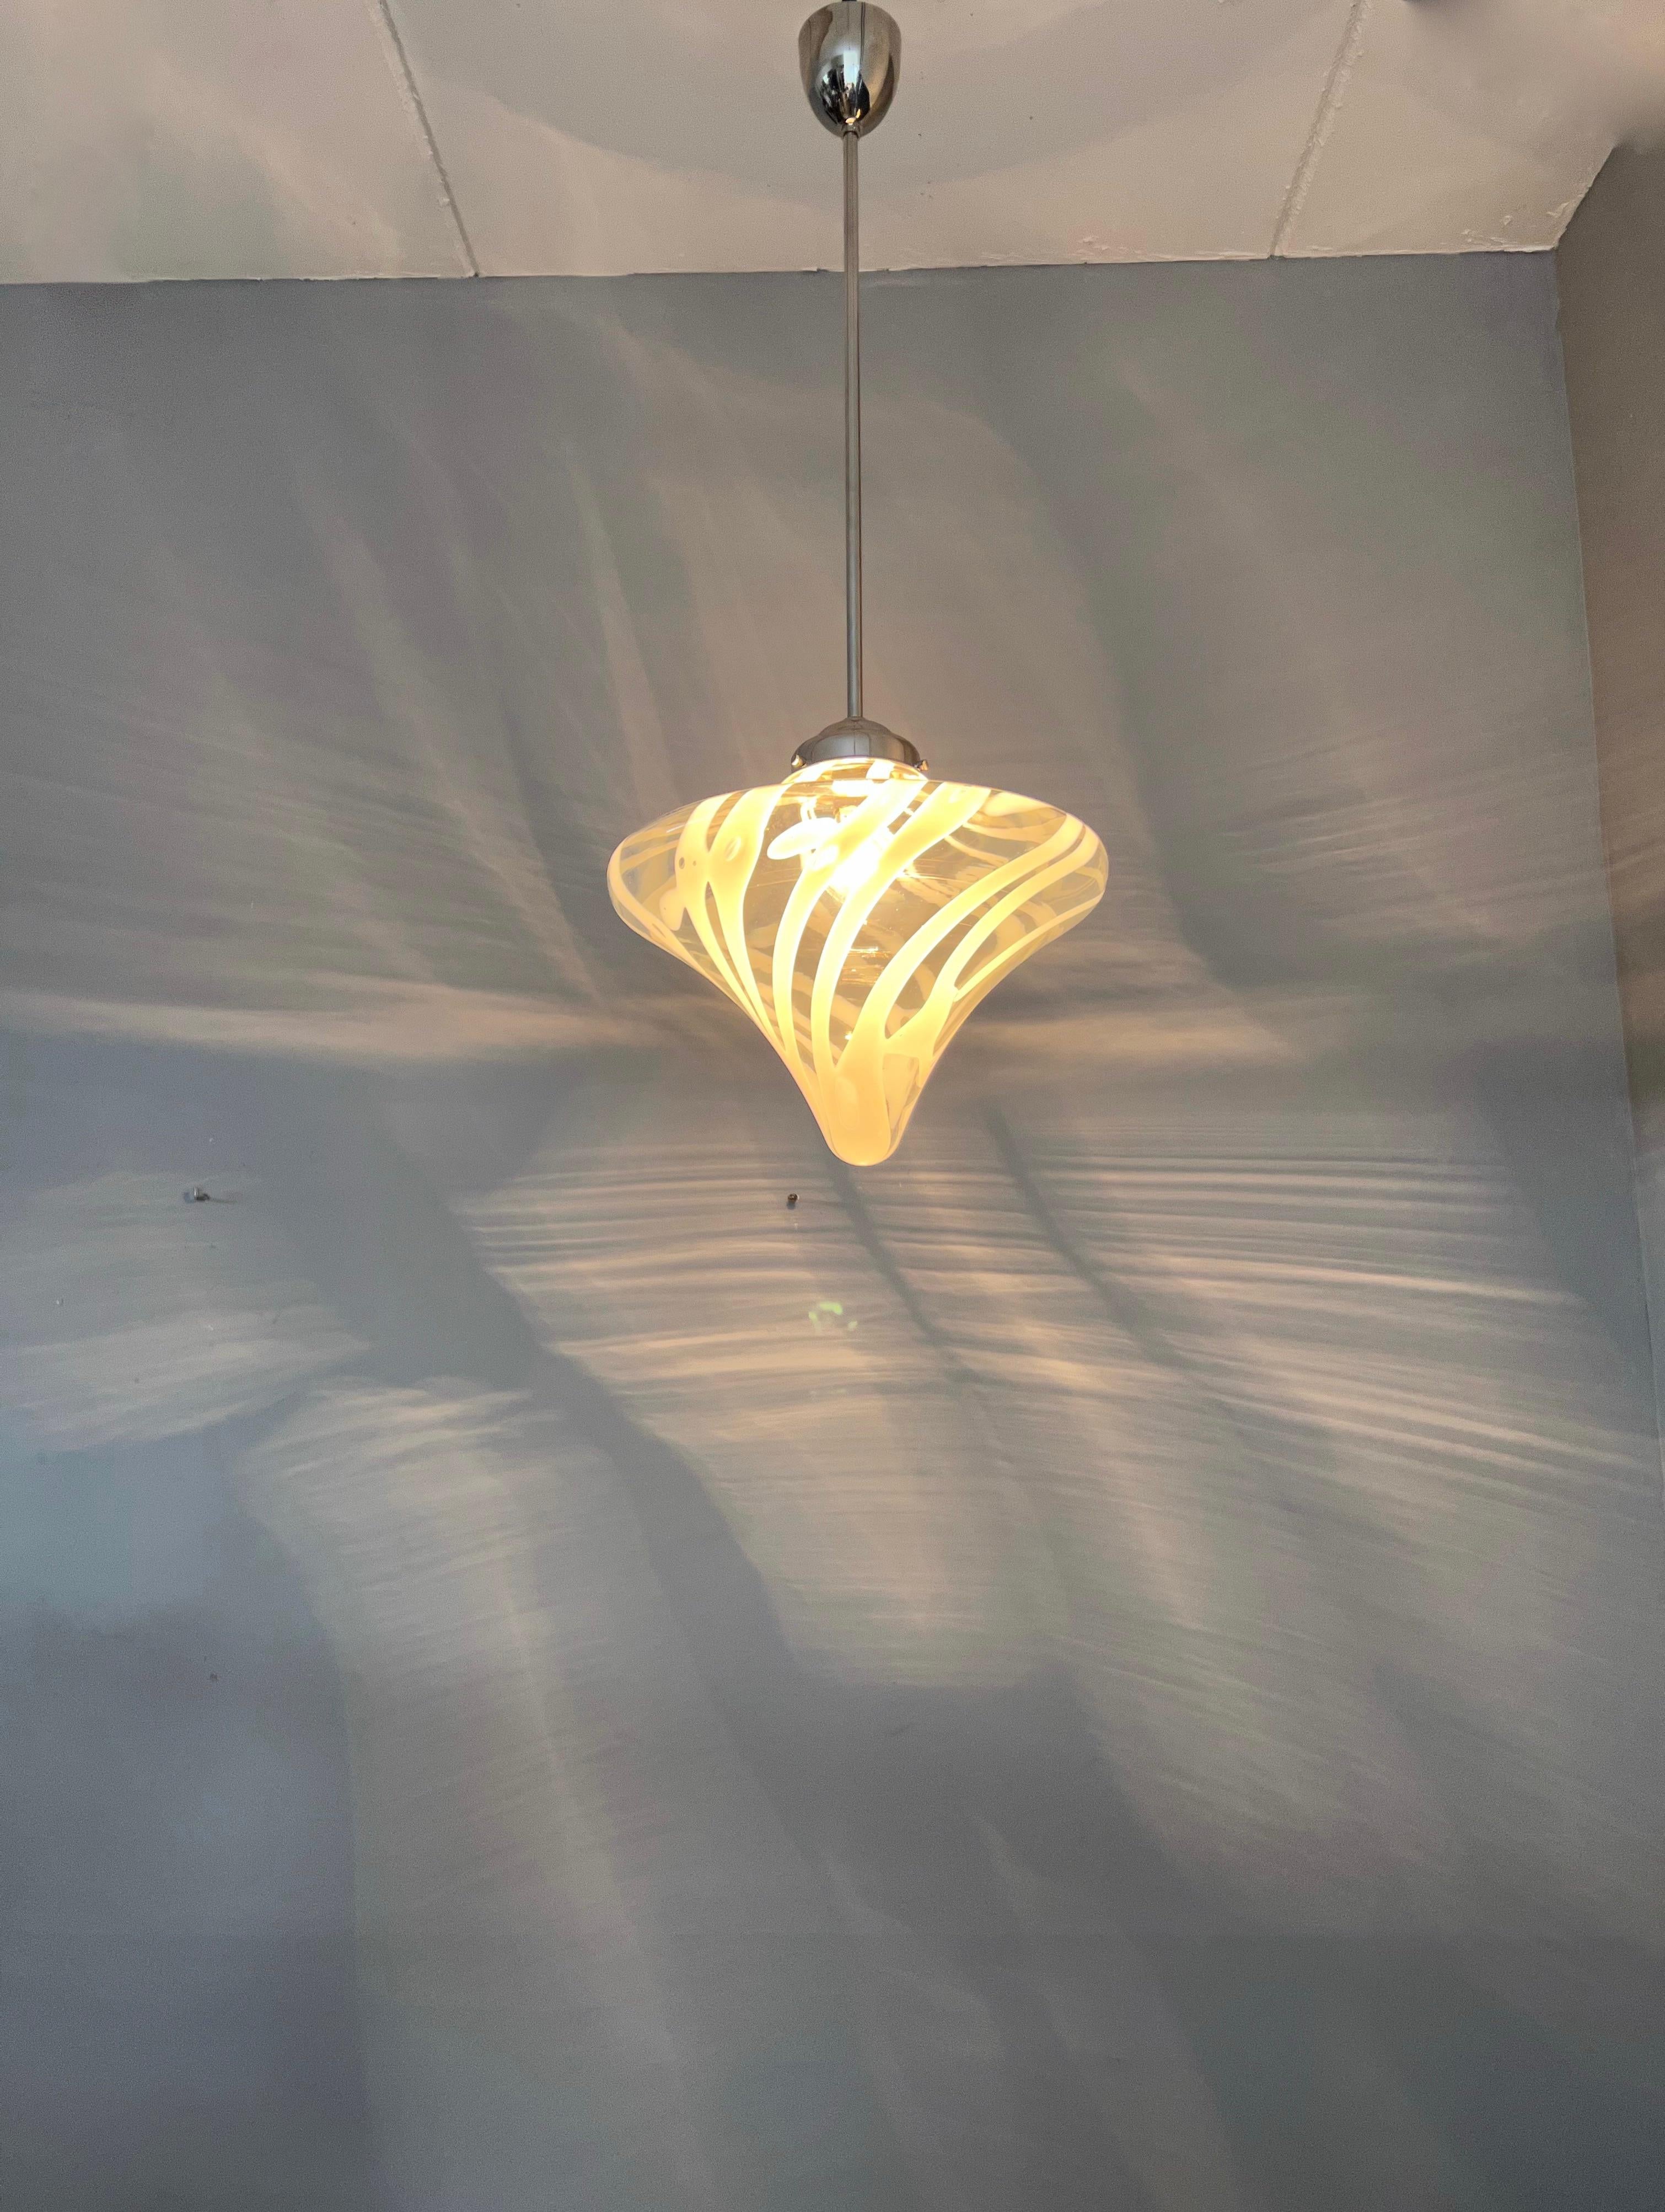 Blown Glass Mid-Century Modern Tornado Design Murano Clear Glass Art Pendant Light Fixture